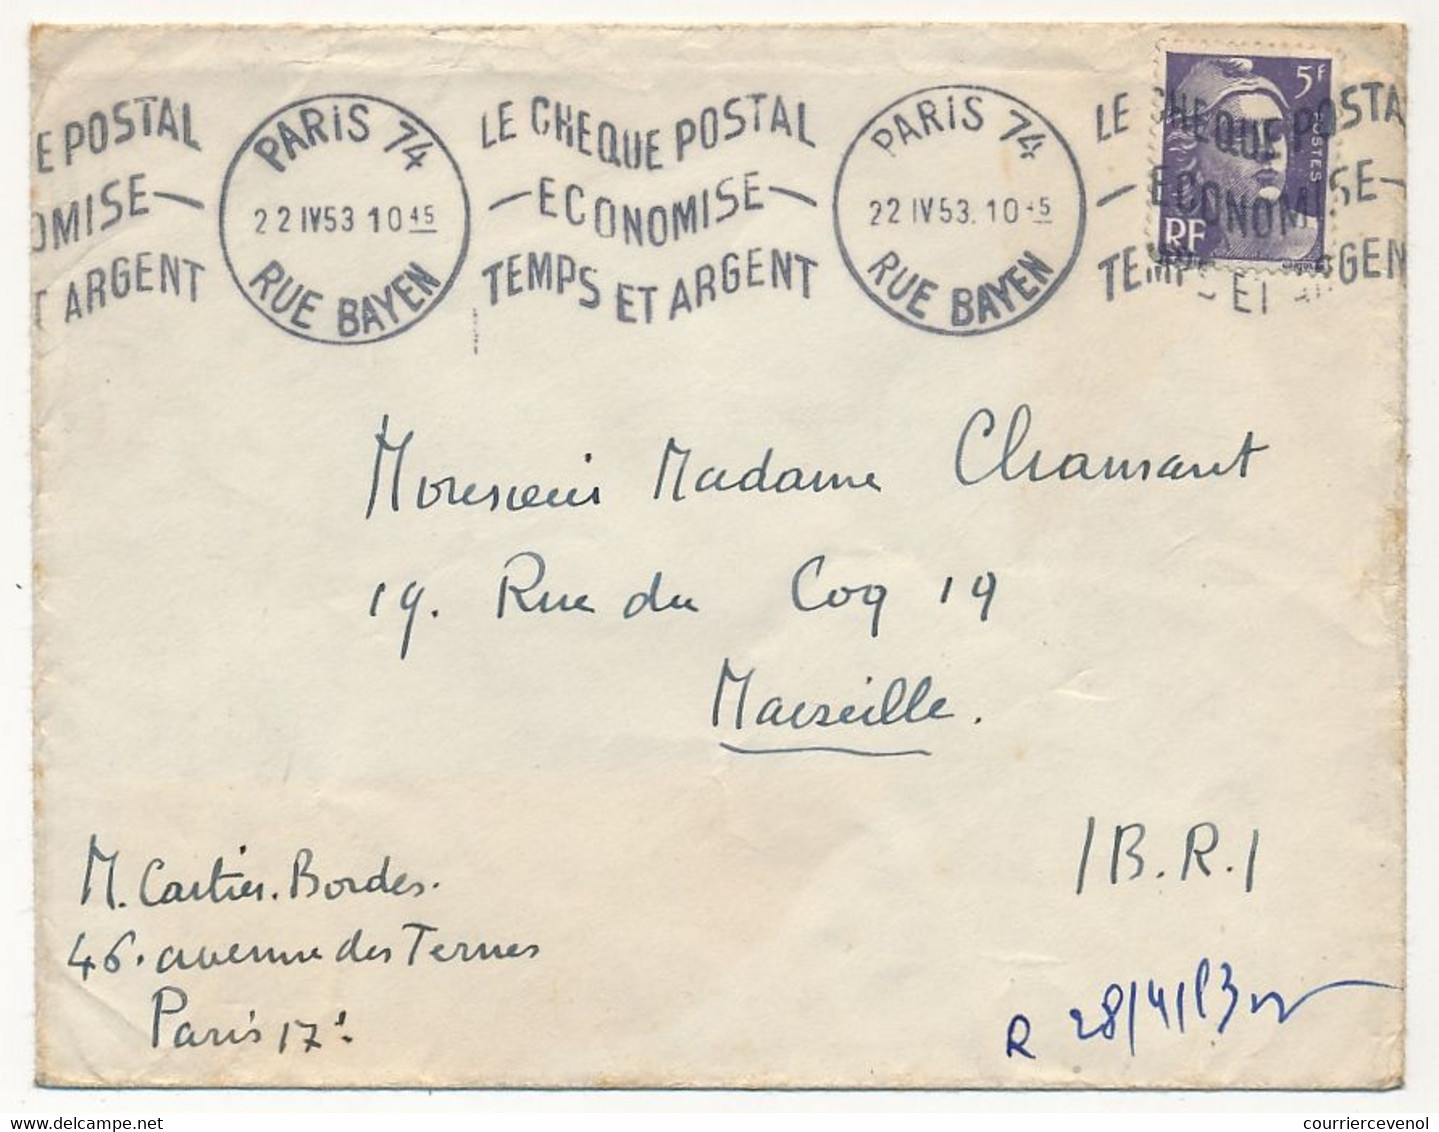 FRANCE - Env Affr. 3F Gandon - OMEC "Le Chèque Postal économise Temps Et Argent" - Paris 74 Rue Bayen 1953 - Maschinenstempel (Werbestempel)